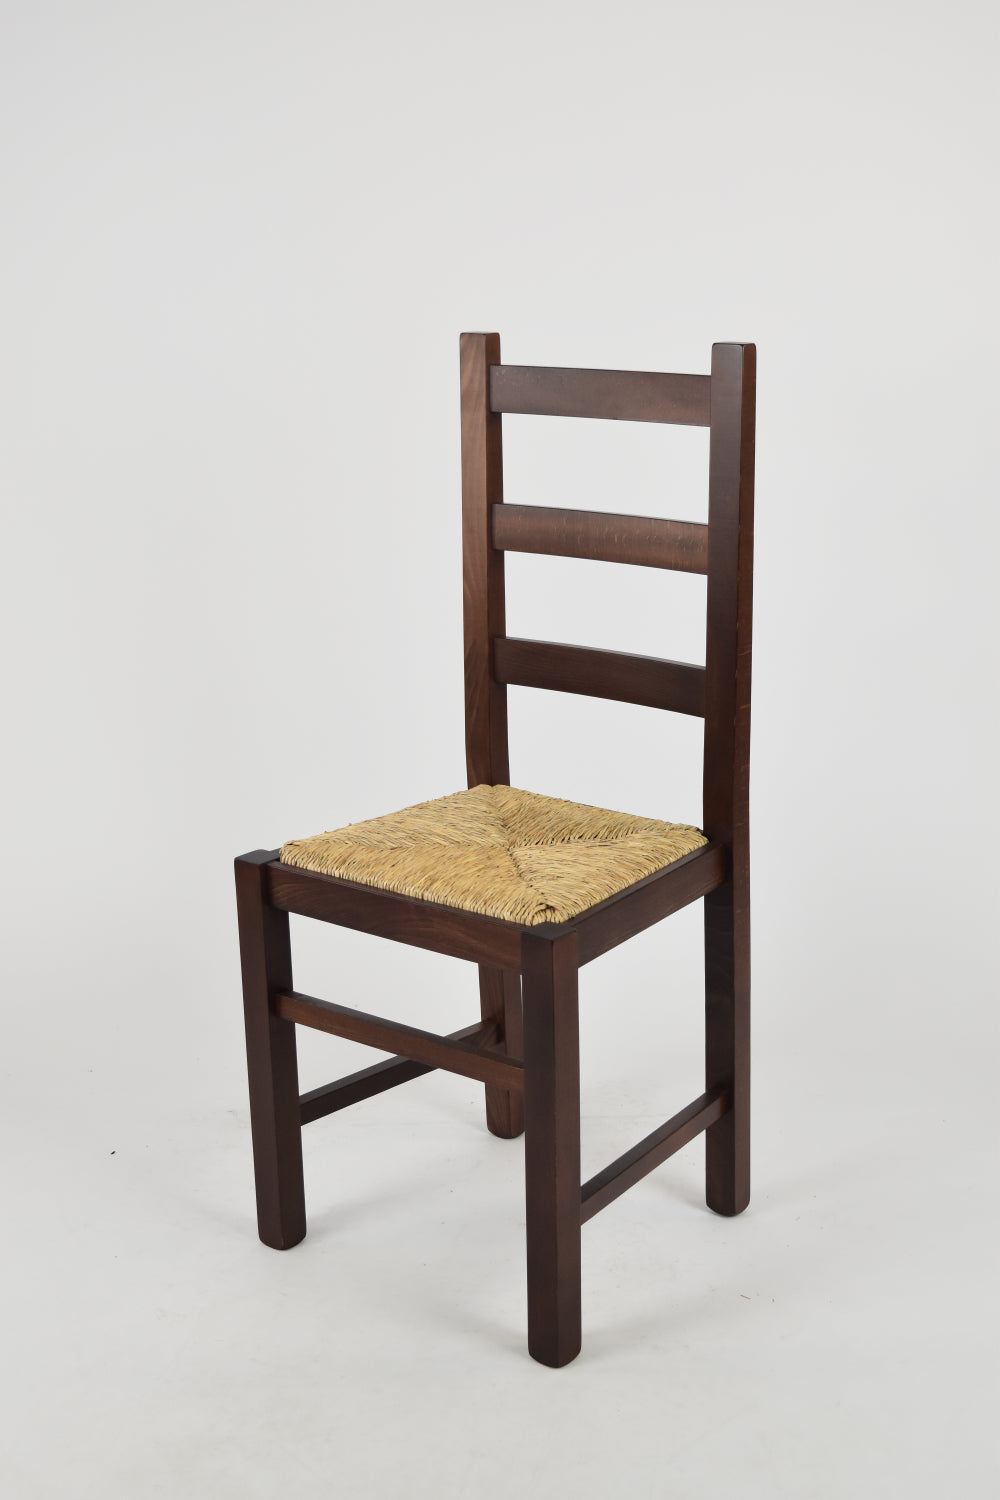 Tommychairs - Set 2 sillas de Cocina y Comedor  Rustica, Estructura en Madera de Haya Color Nogal Oscuro y Asiento en Paja